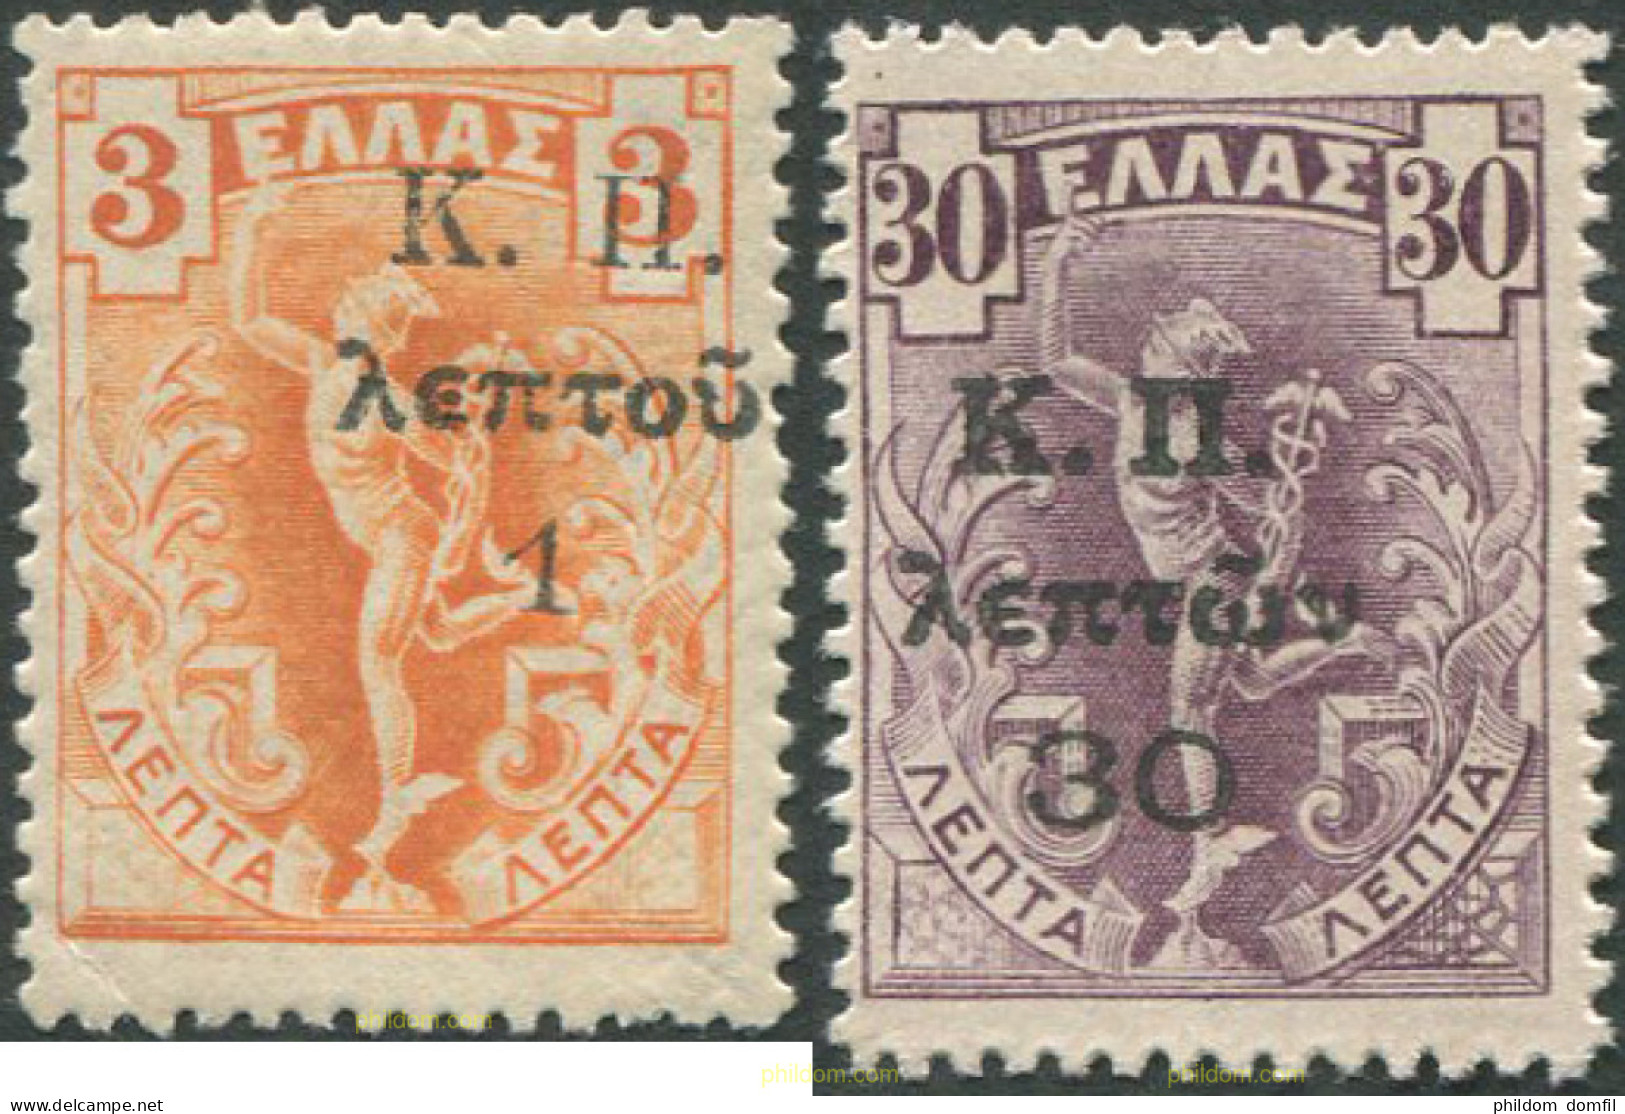 668251 HINGED GRECIA 1917 SELLOS DEL 1901 SOBRECARGADOS -SELLOS DE LA SEGURIDAD SOCIAL- - Used Stamps